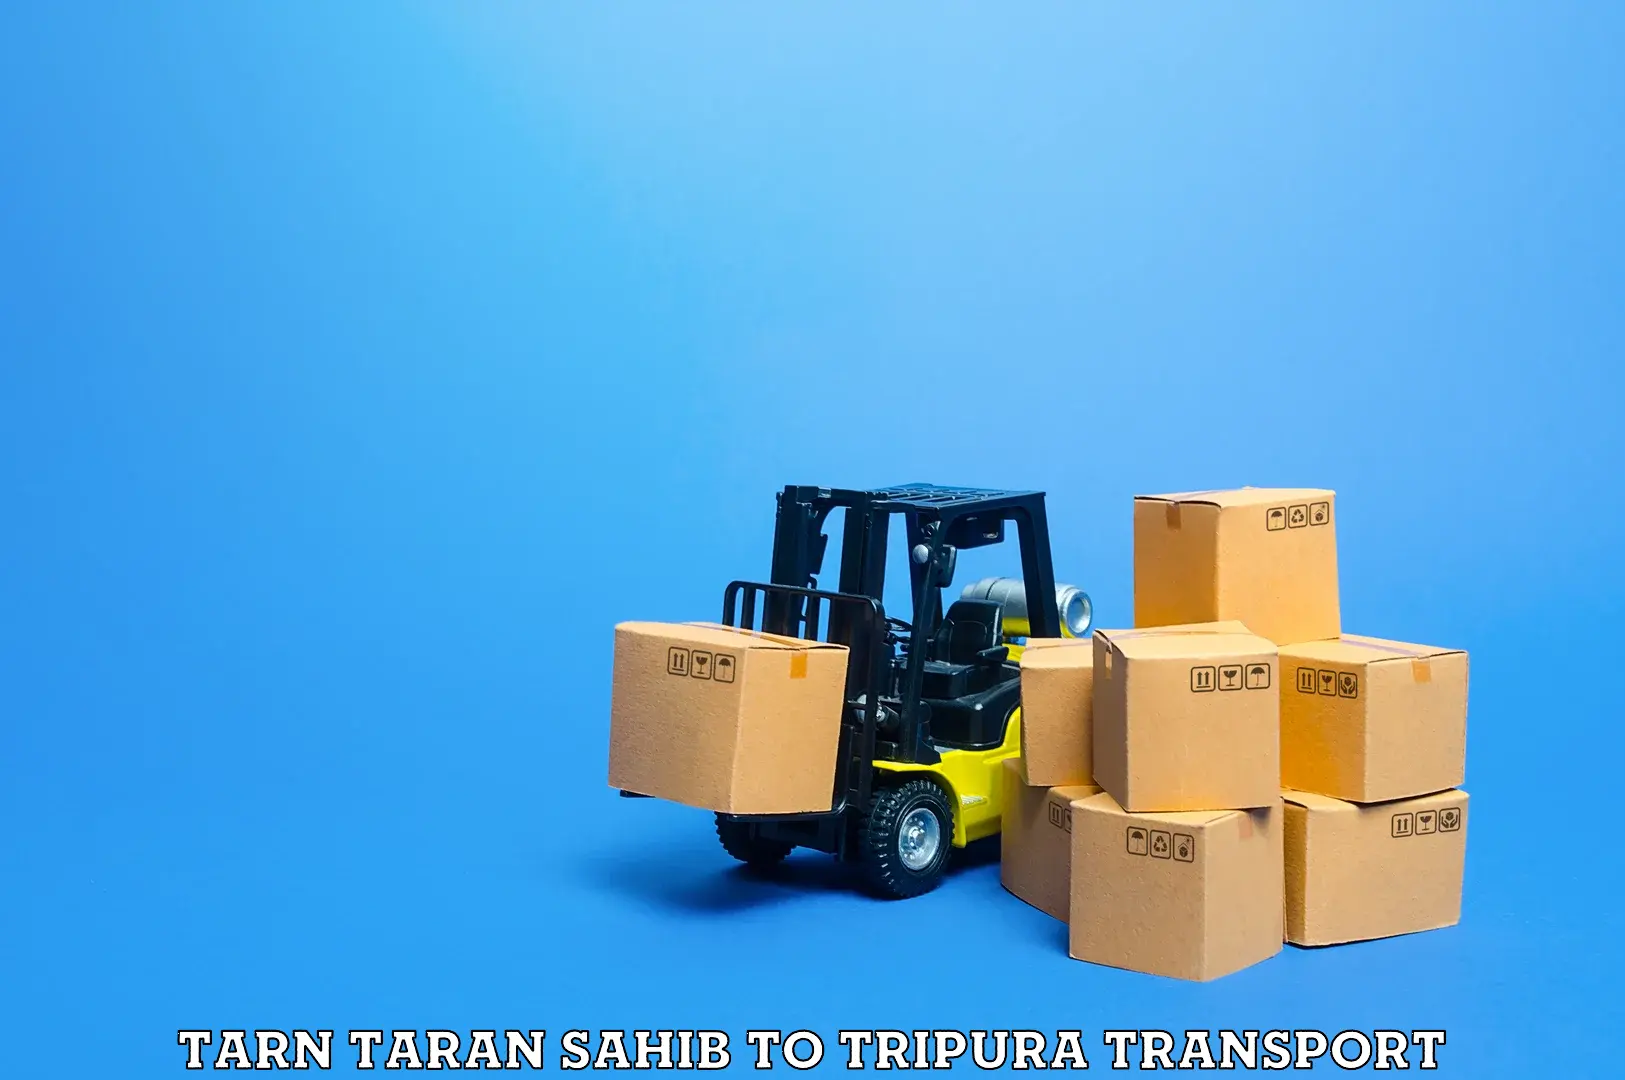 Container transport service Tarn Taran Sahib to Manu Bazar